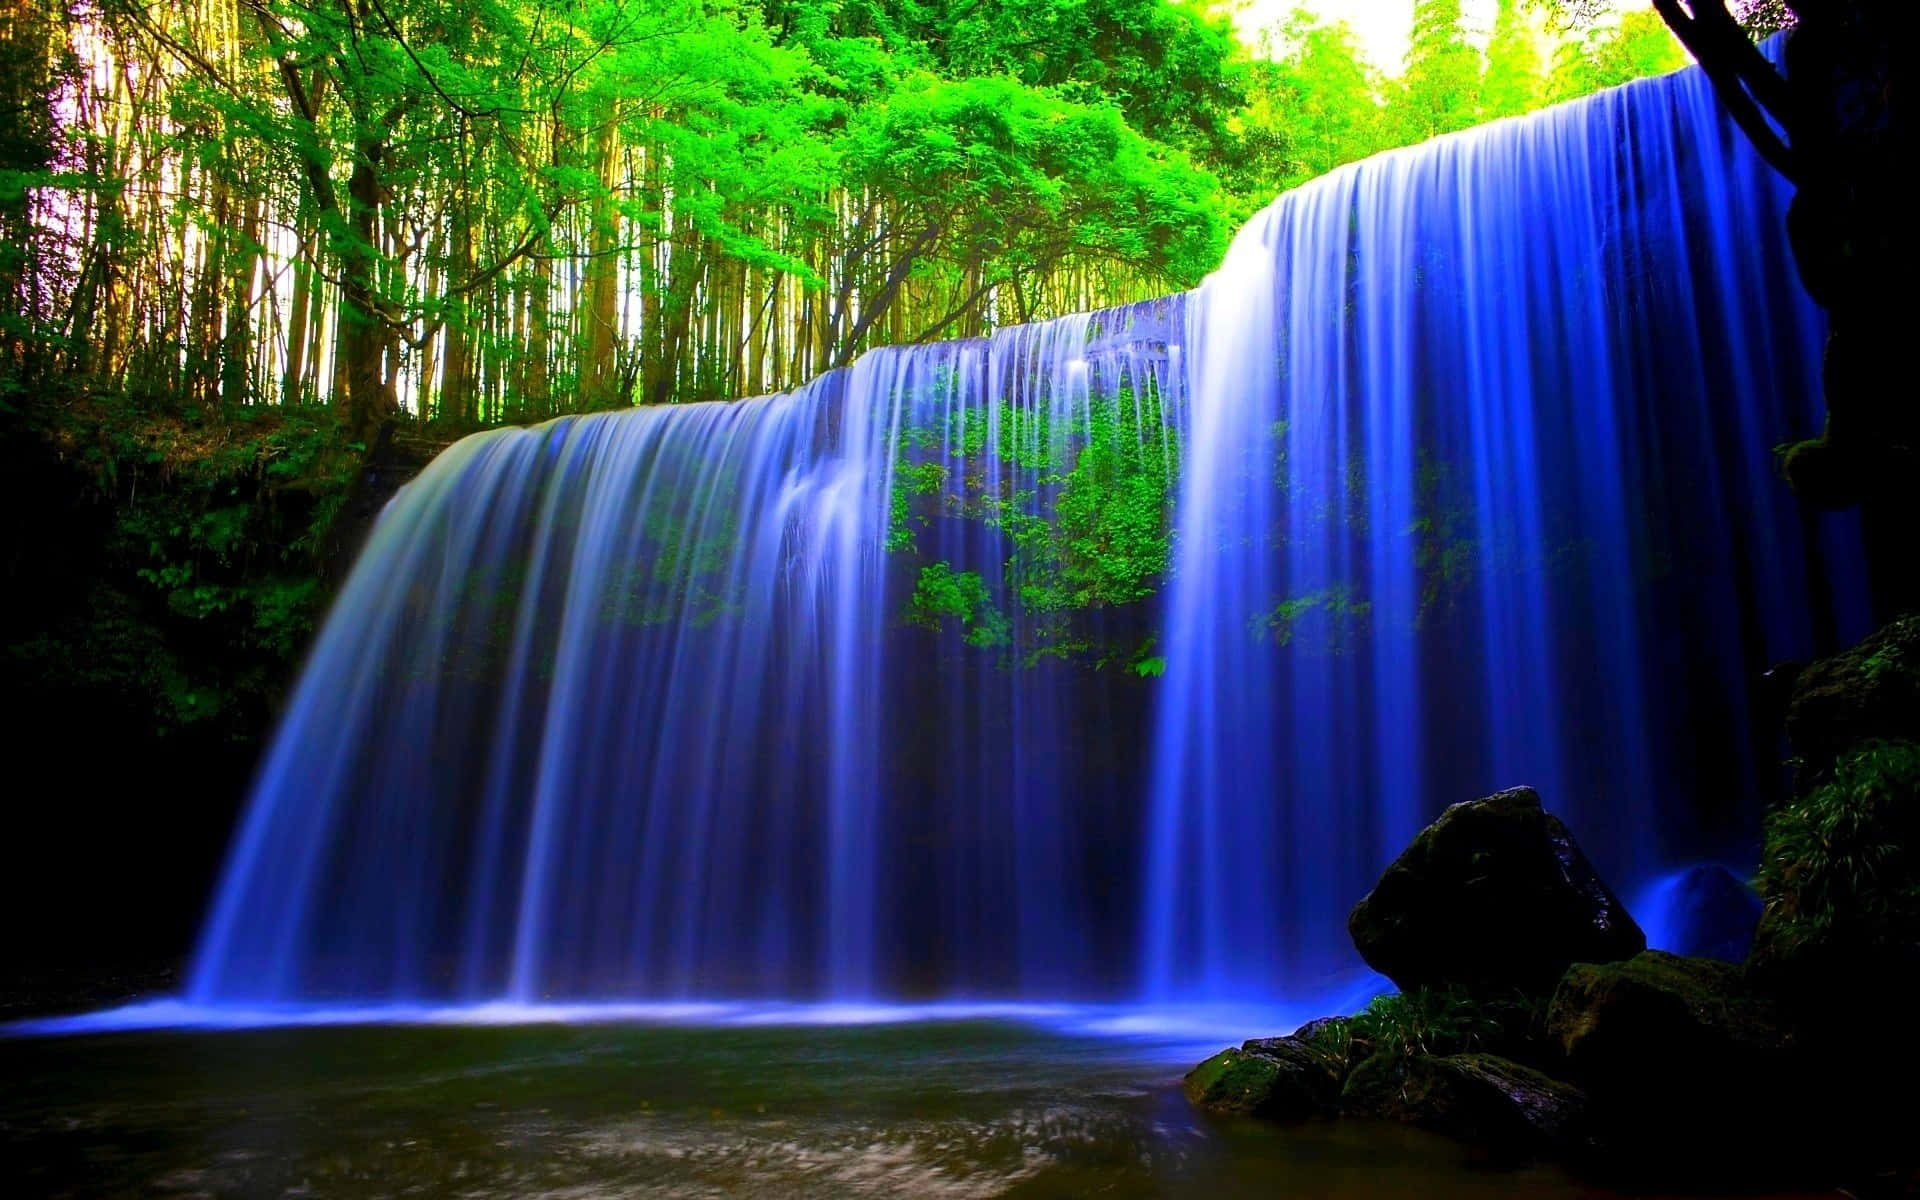 Genießensie Die Schönheit Der Natur Bei Diesem Wunderschönen Wasserfall!